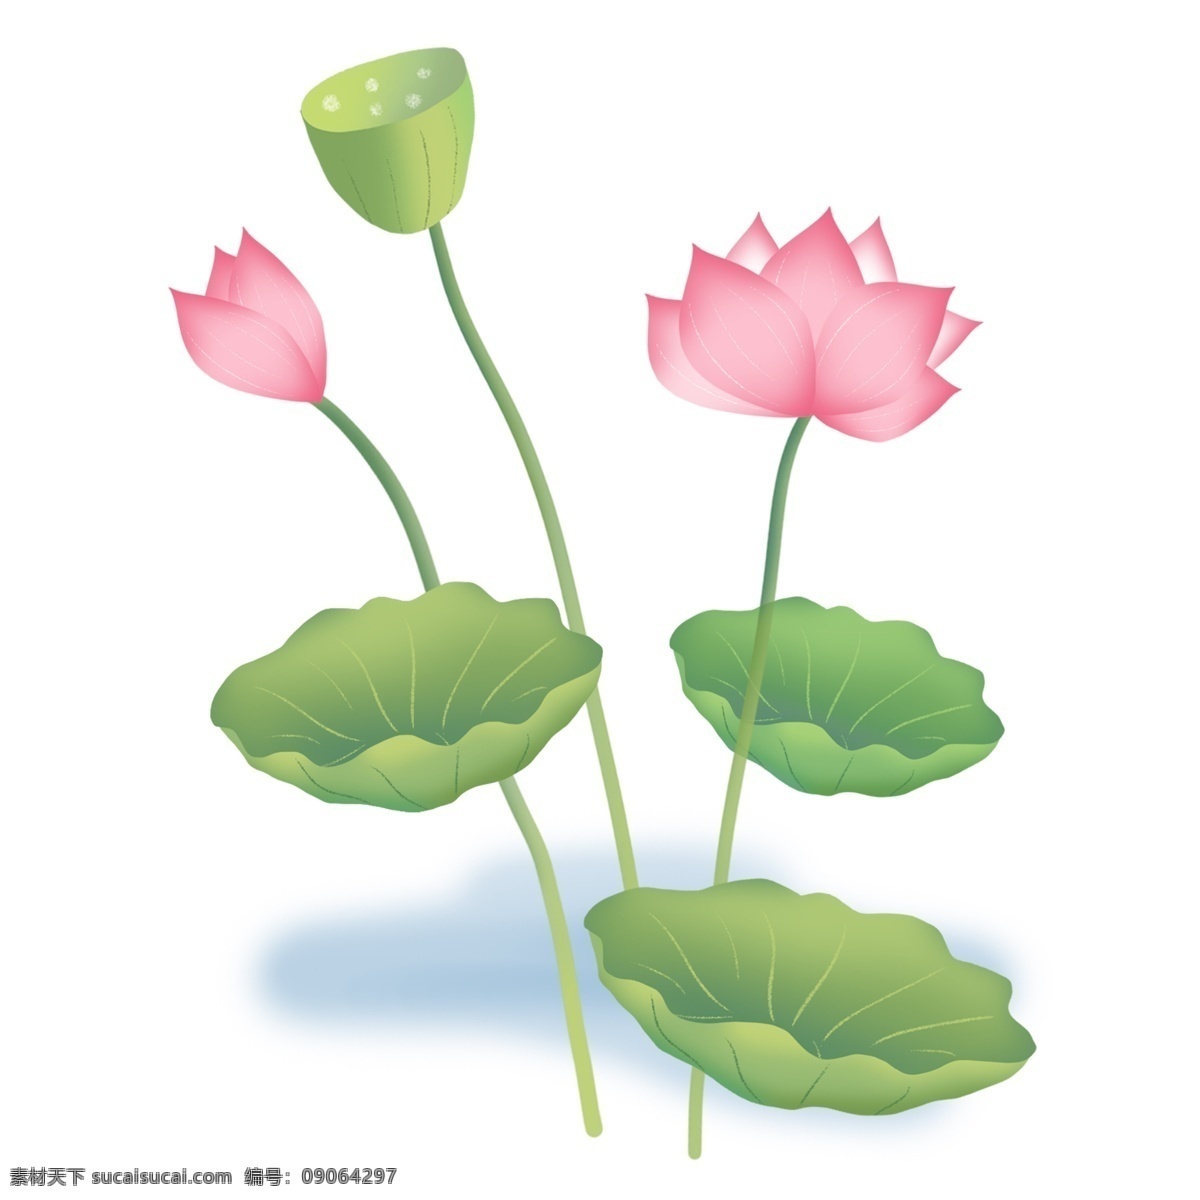 荷叶 荷花 水中 样子 莲蓬 莲子 水中植物 中国风荷花 插画风荷花 叶子 花 花朵 莲花 粉色 绿色 植物 花瓣